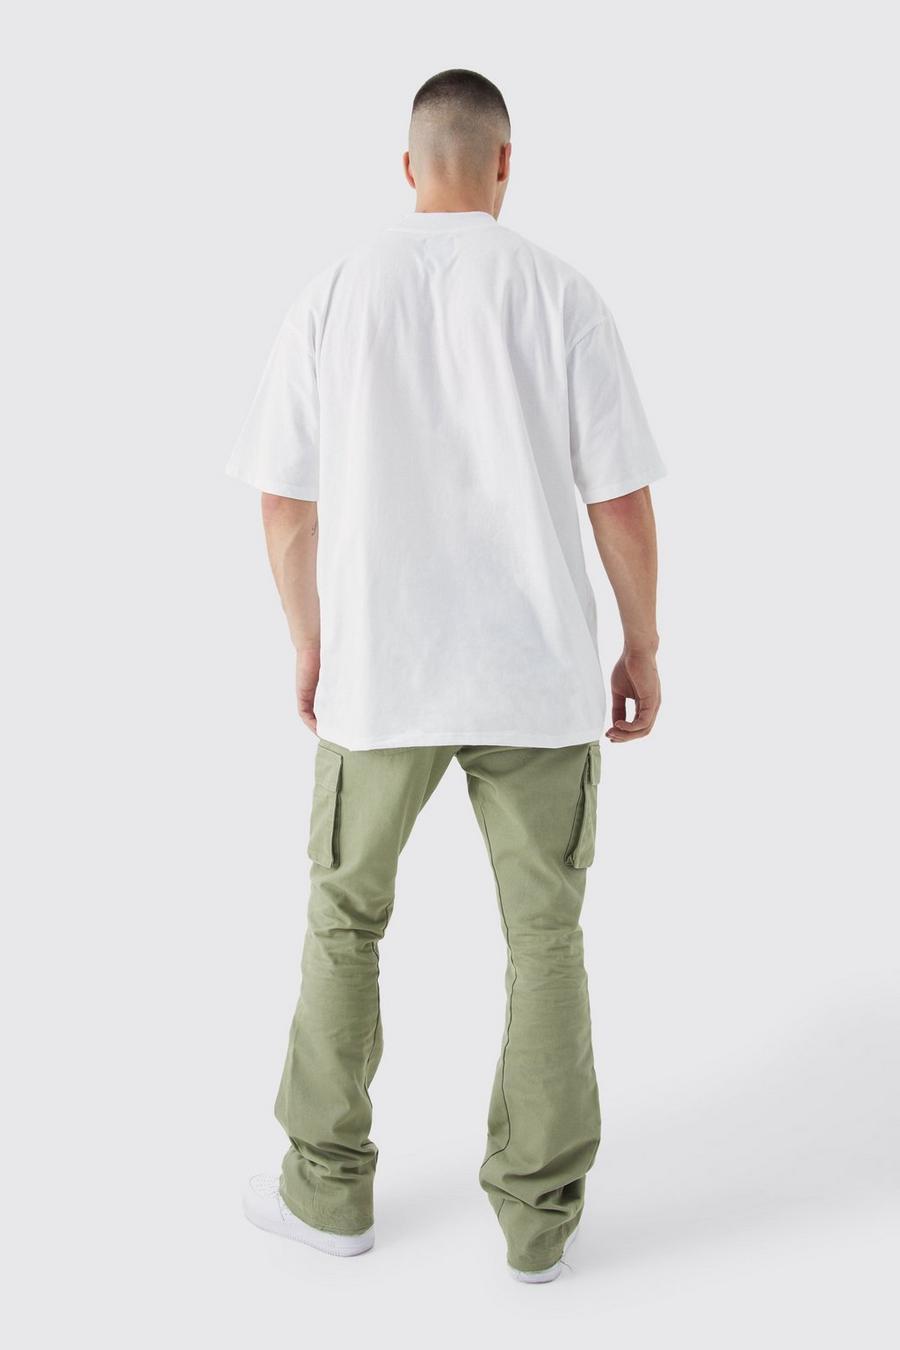 zielone spodnie rurki jeans bojówki naszywki